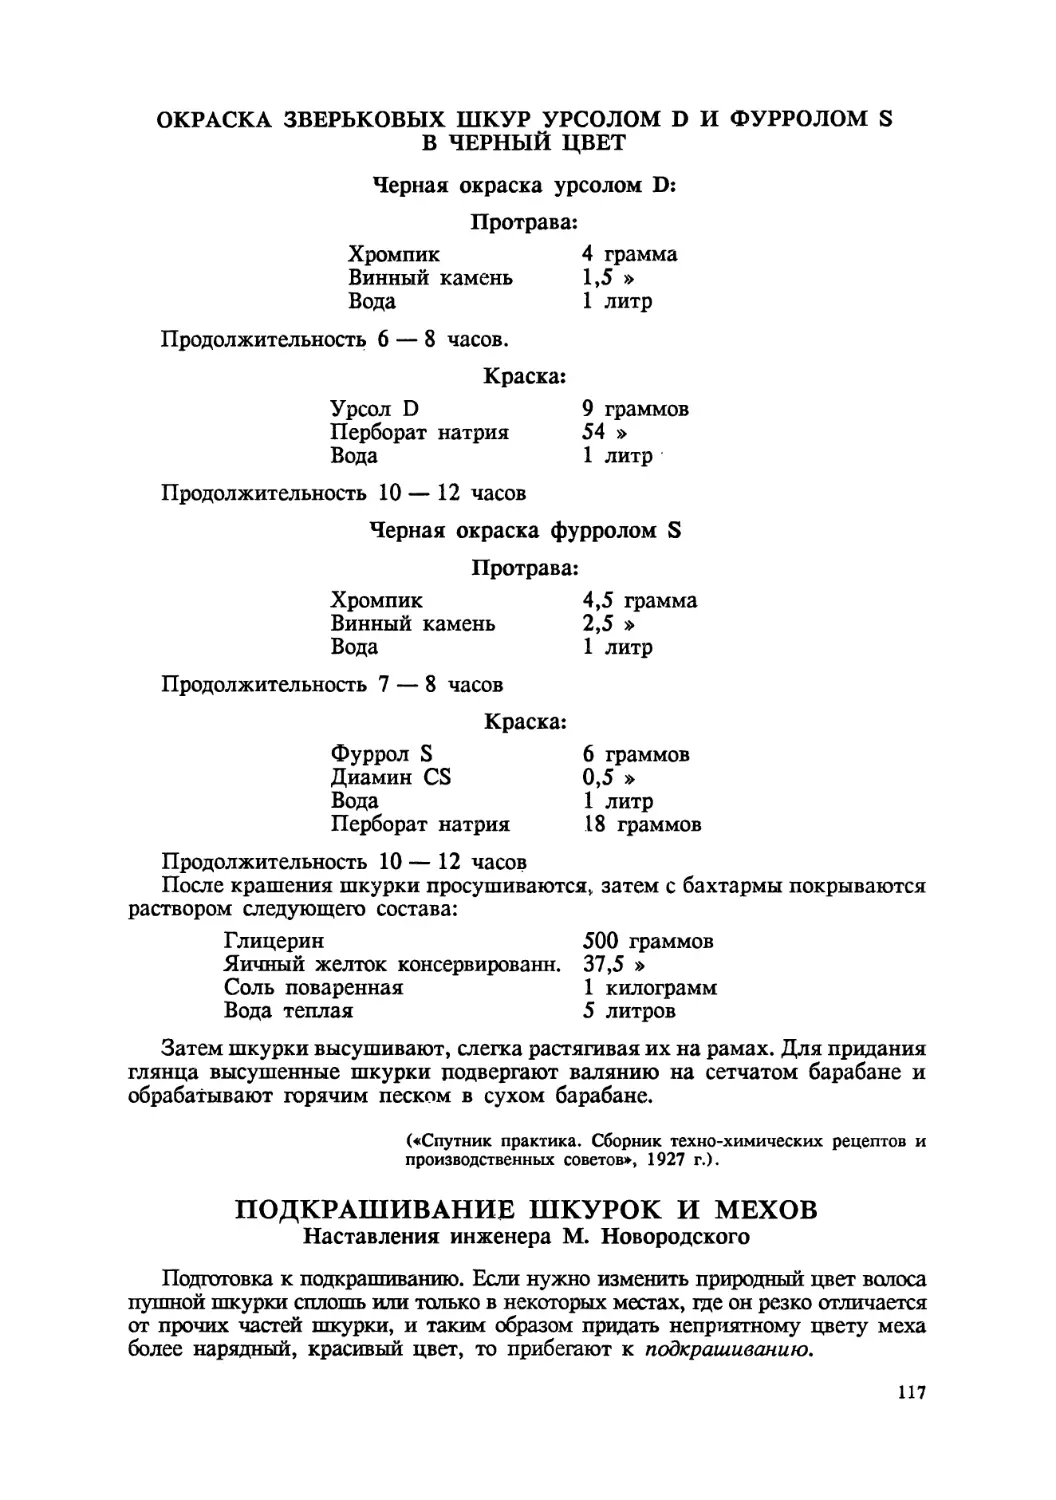 Подкрашивание шкурок и мехов — наставления М. Новгородского